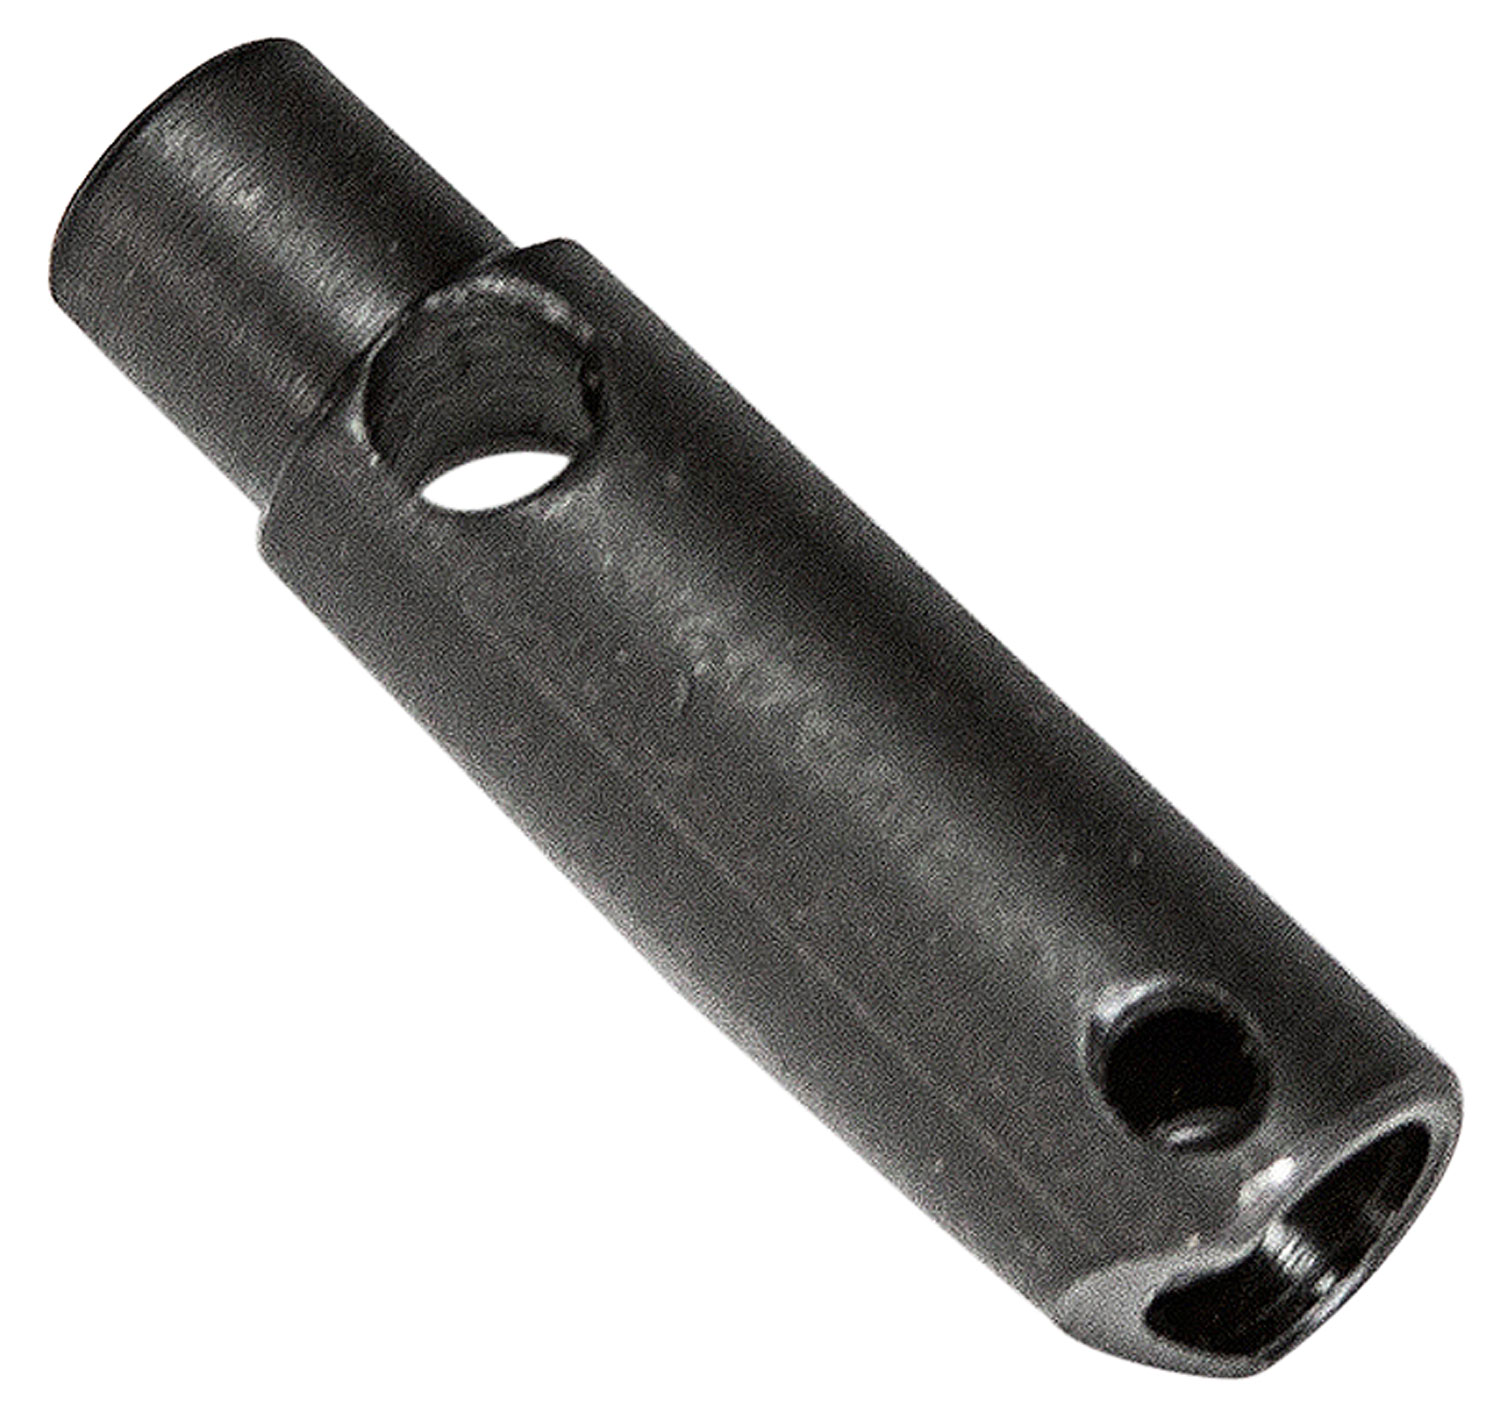 Aim Sports PJARSTKCP Magpul Stock Lock Pin Steel Black